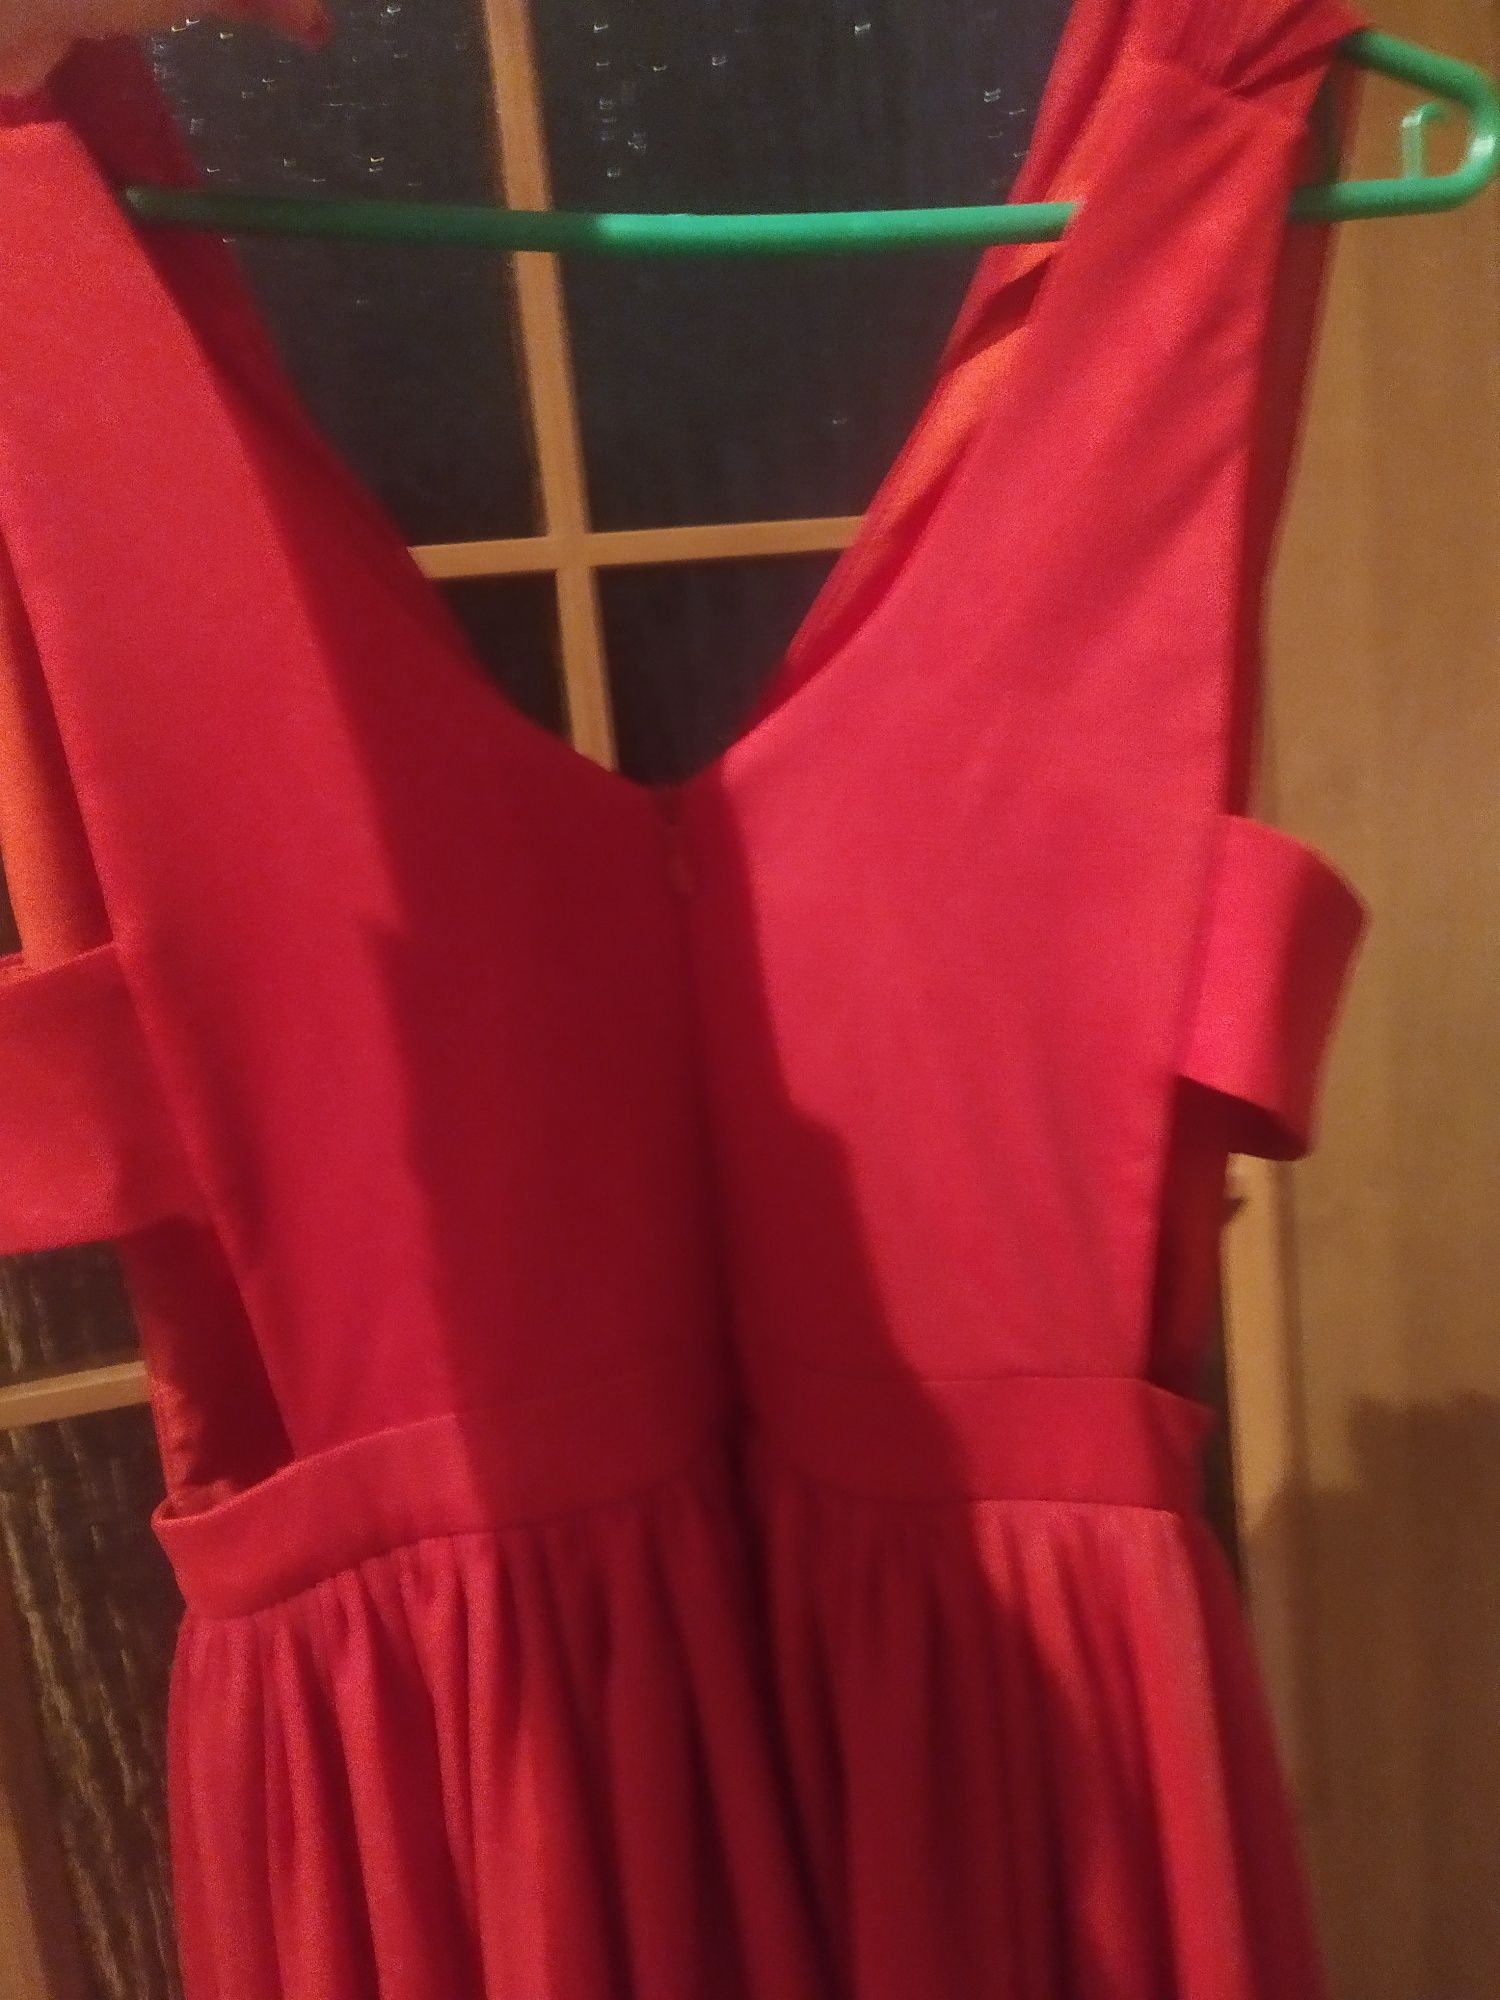 Śliczna czerwona sukienka xs